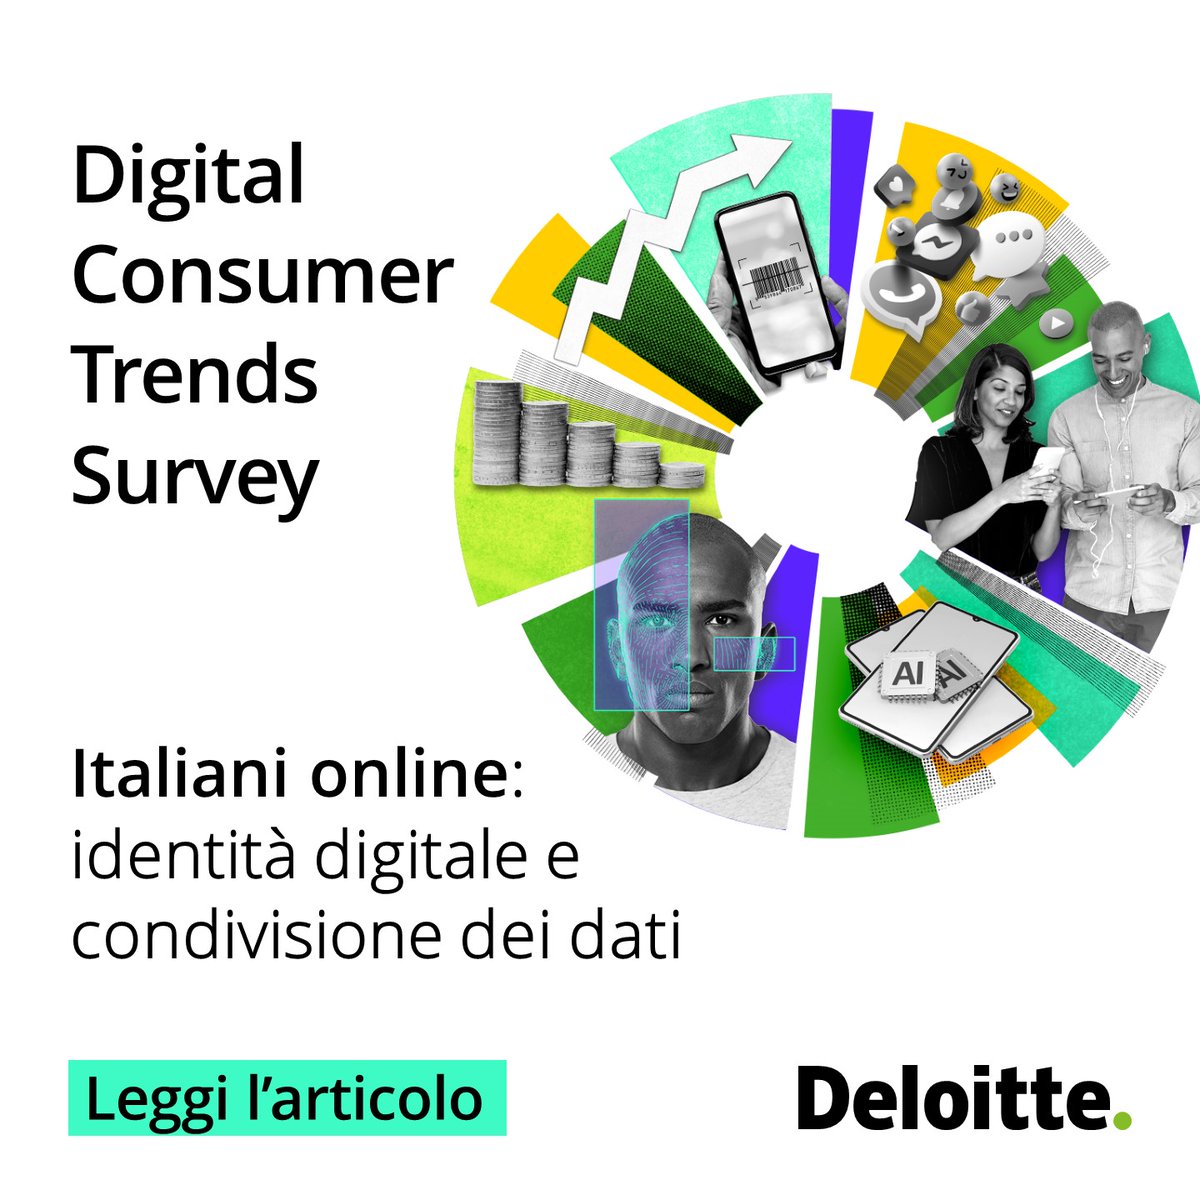 Dalla nuova Digital Consumer Trends Survey emerge la centralità dei temi di identità digitale e condivisione dei dati. Scopri di più: deloi.tt/3v6s1Pb #DigitalConsumerTrends #DeloitteItalia